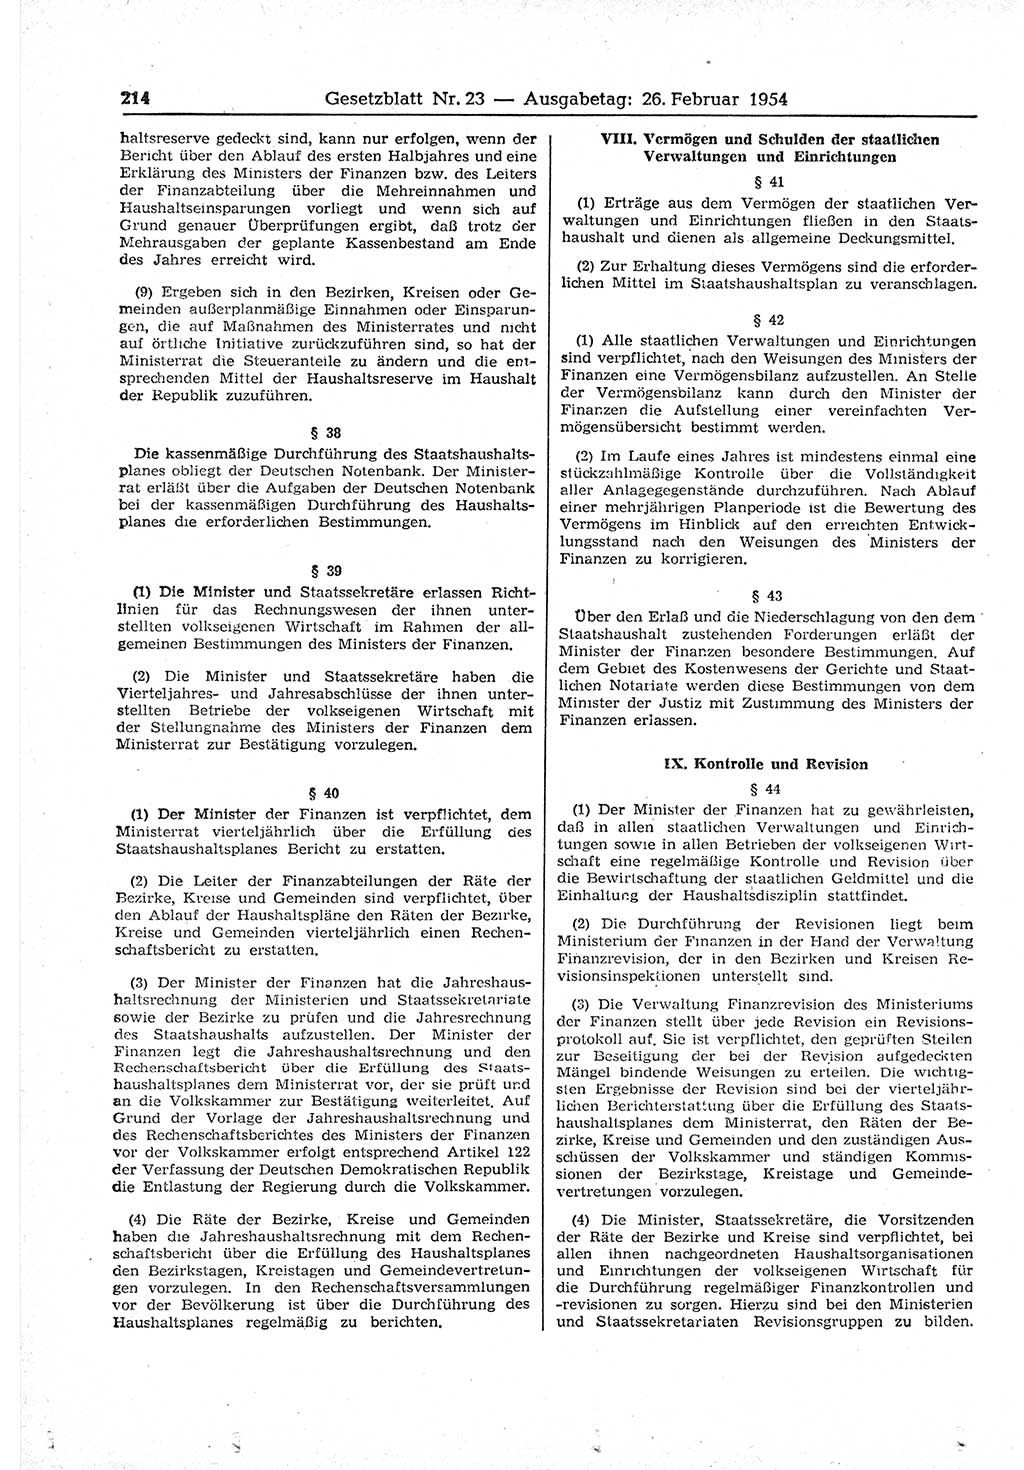 Gesetzblatt (GBl.) der Deutschen Demokratischen Republik (DDR) 1954, Seite 214 (GBl. DDR 1954, S. 214)